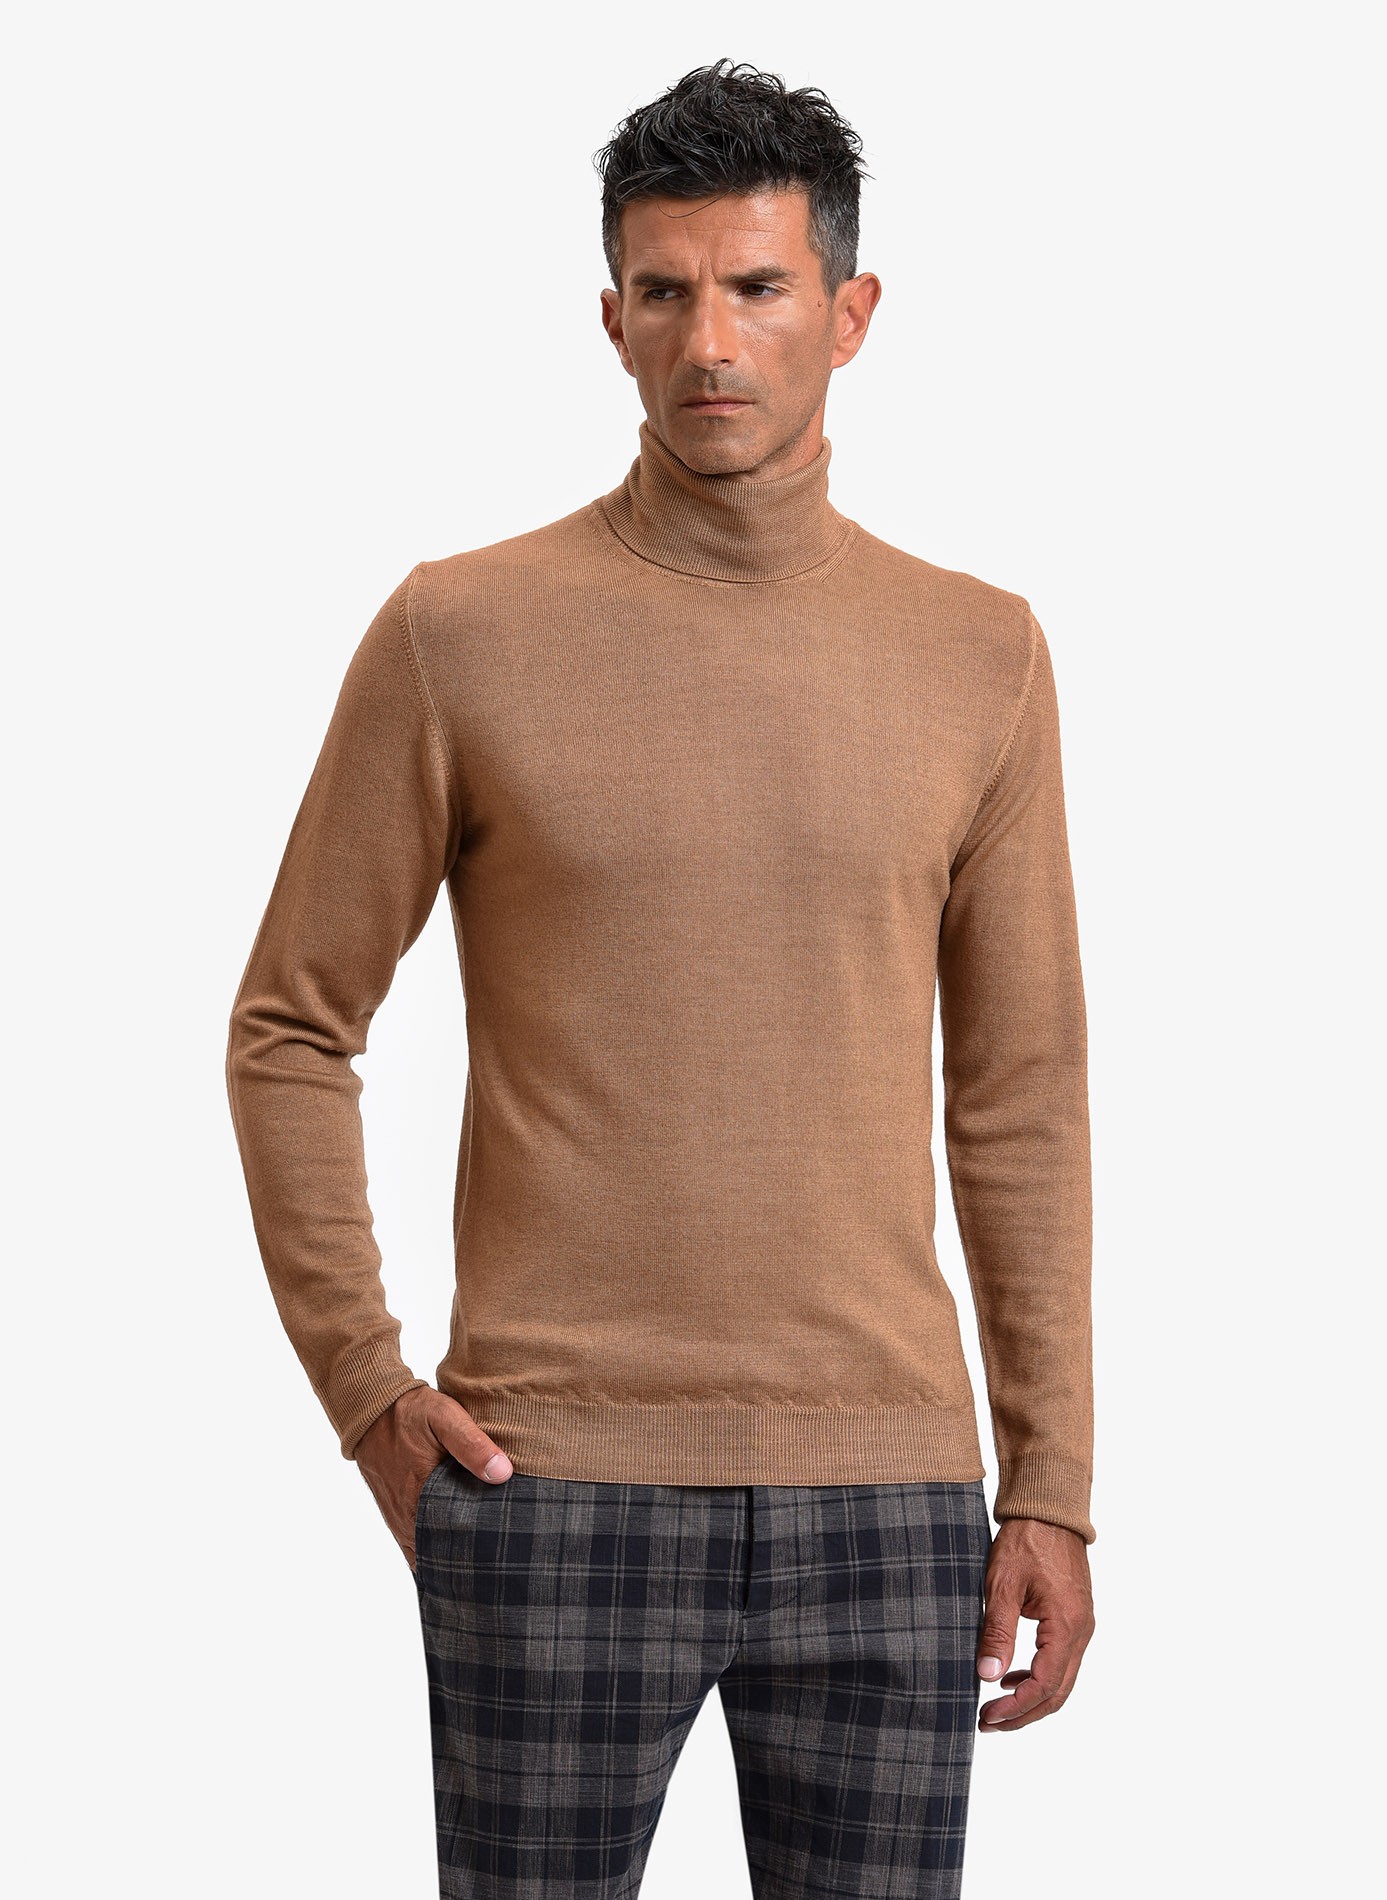 Maglia uomo John Barritt vestibilita slim, dolcevita, filato in lana merino  tinto in capo, colore rosso mattone. Composizione 100% lana. Cammello